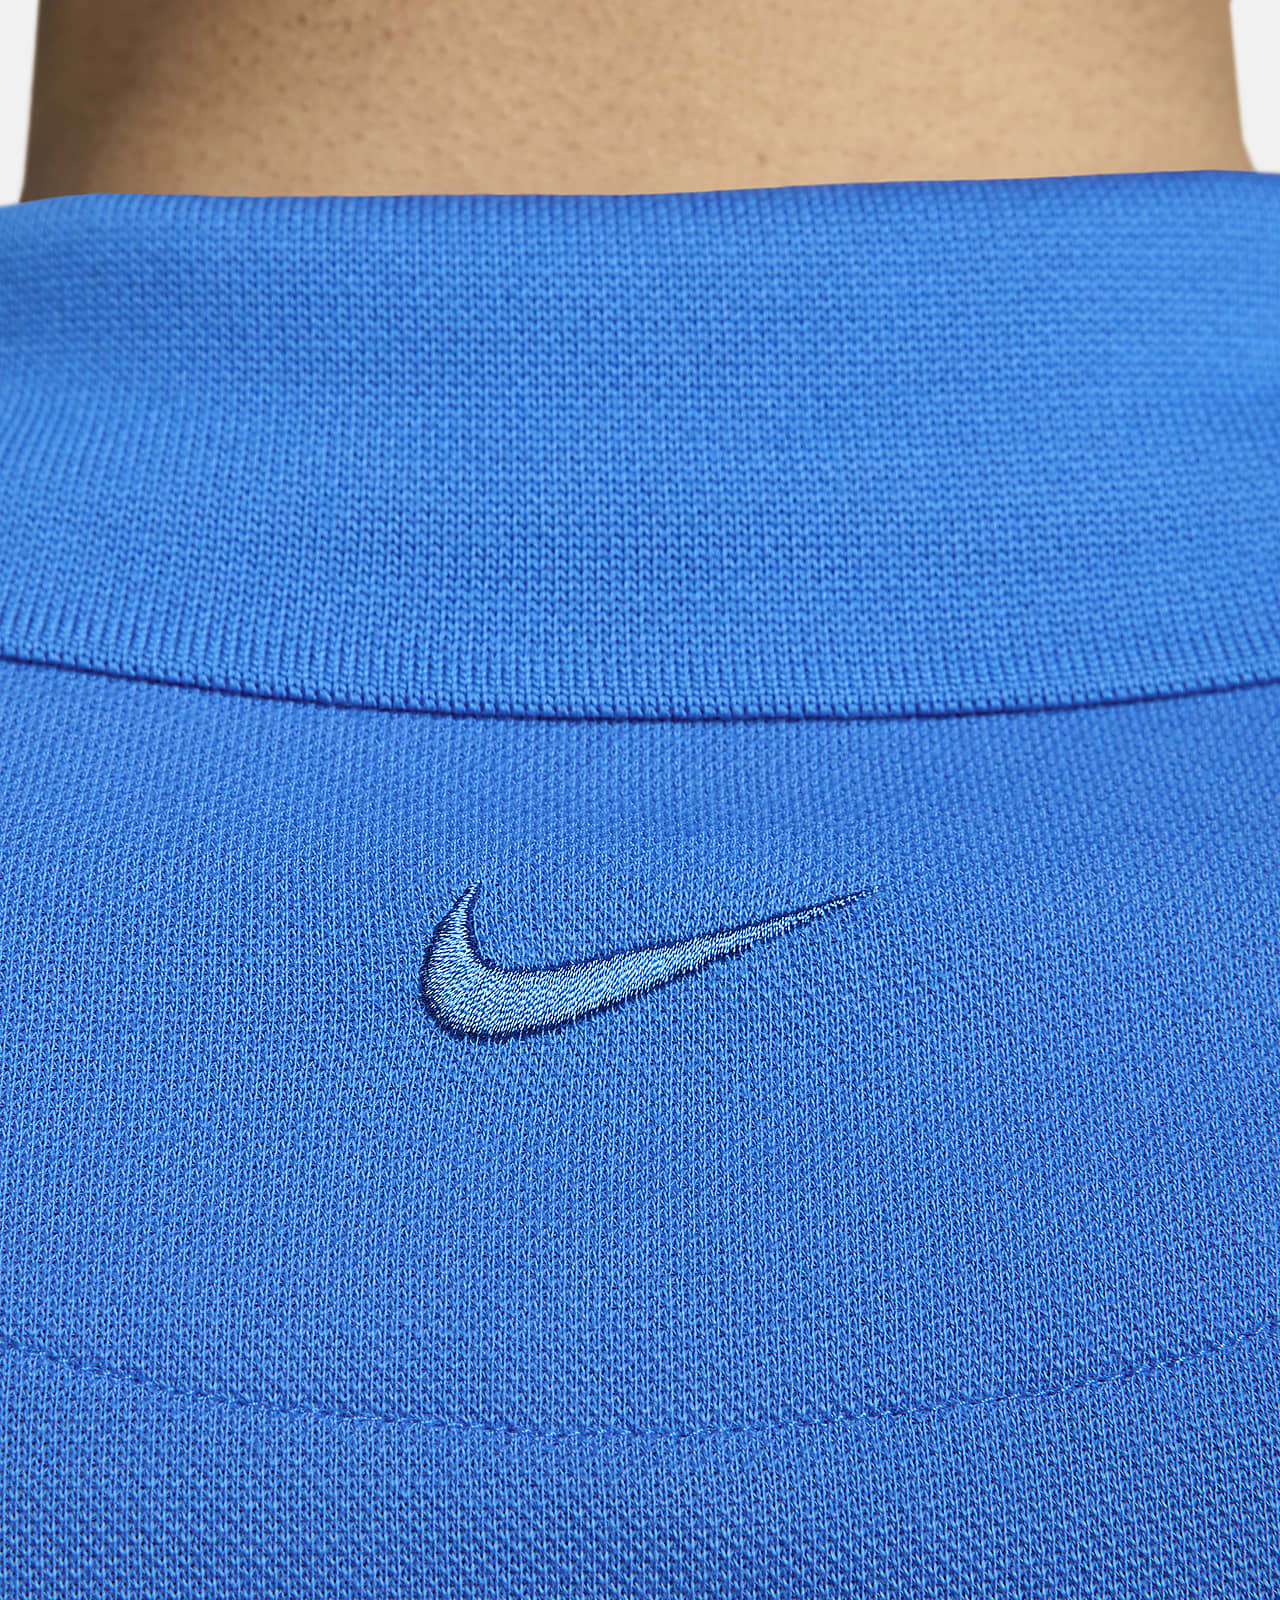 The Nike Polo Rafa Men's Slim-Fit Polo